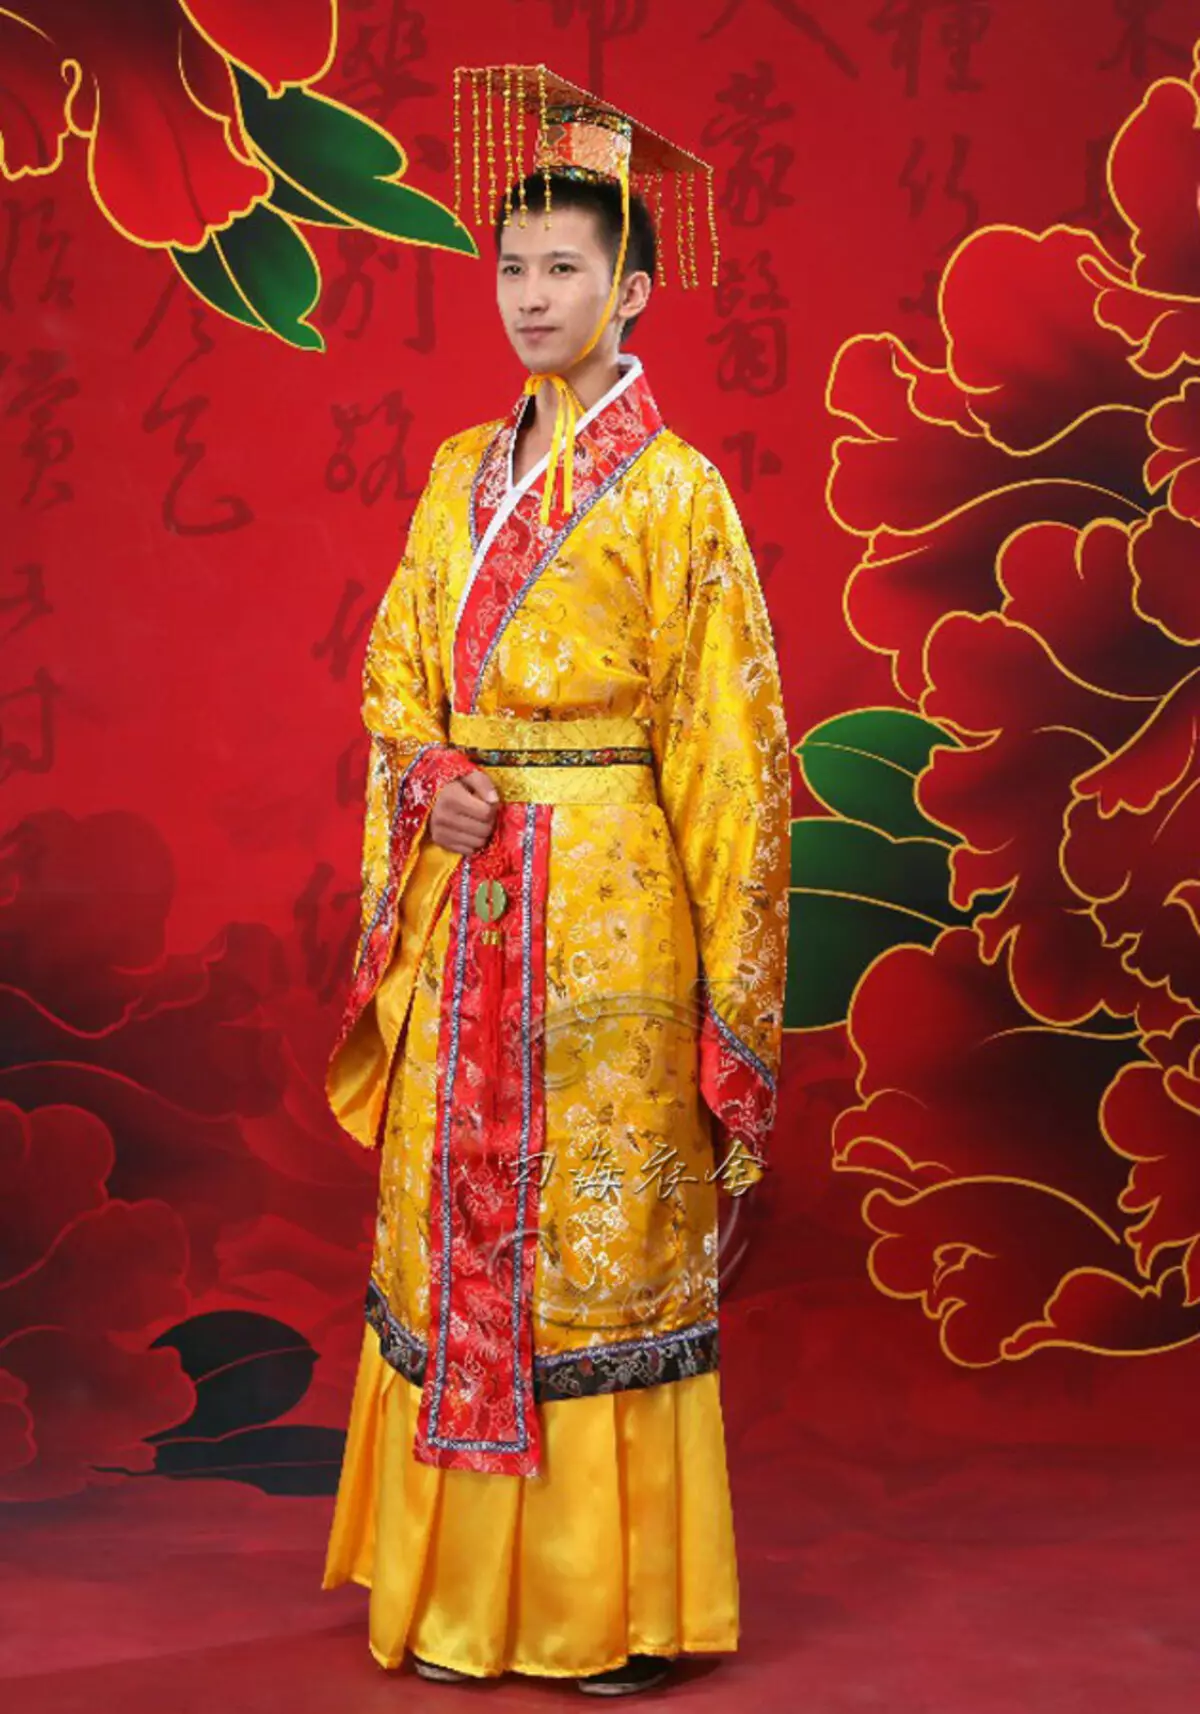 החליפה הלאומית הסינית (73 תמונות): תלבושת נקבה מסורתית של עמי סין, חליפה לילדה 1377_32